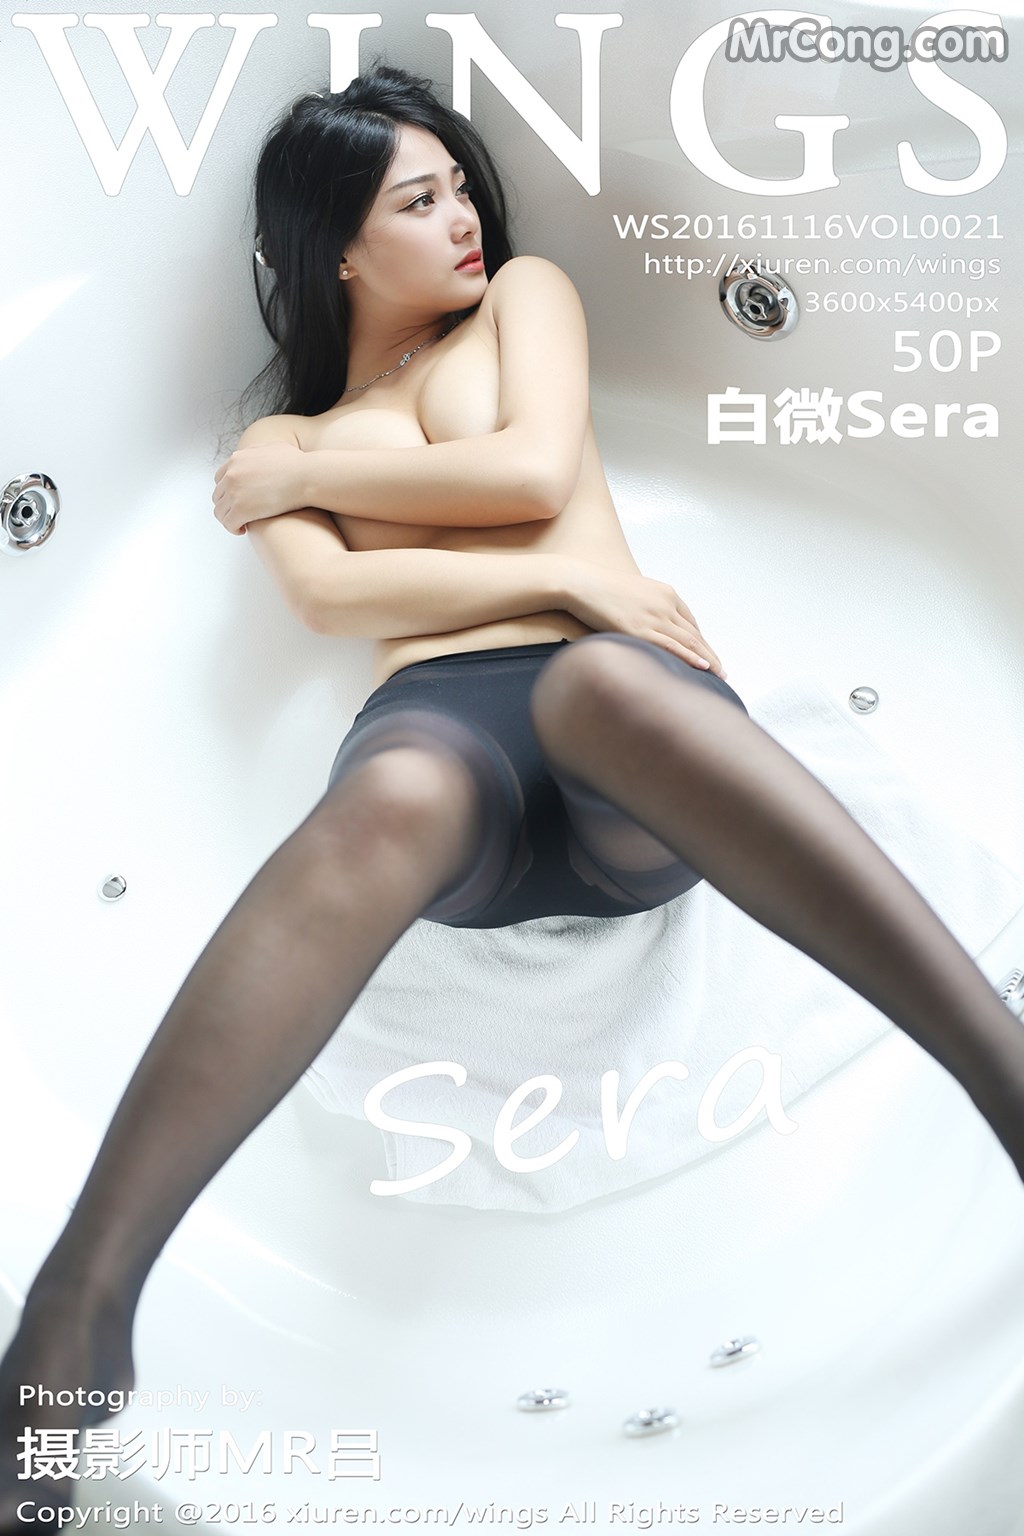 WingS Vol.021: Model Sera (白 微) (51 photos)